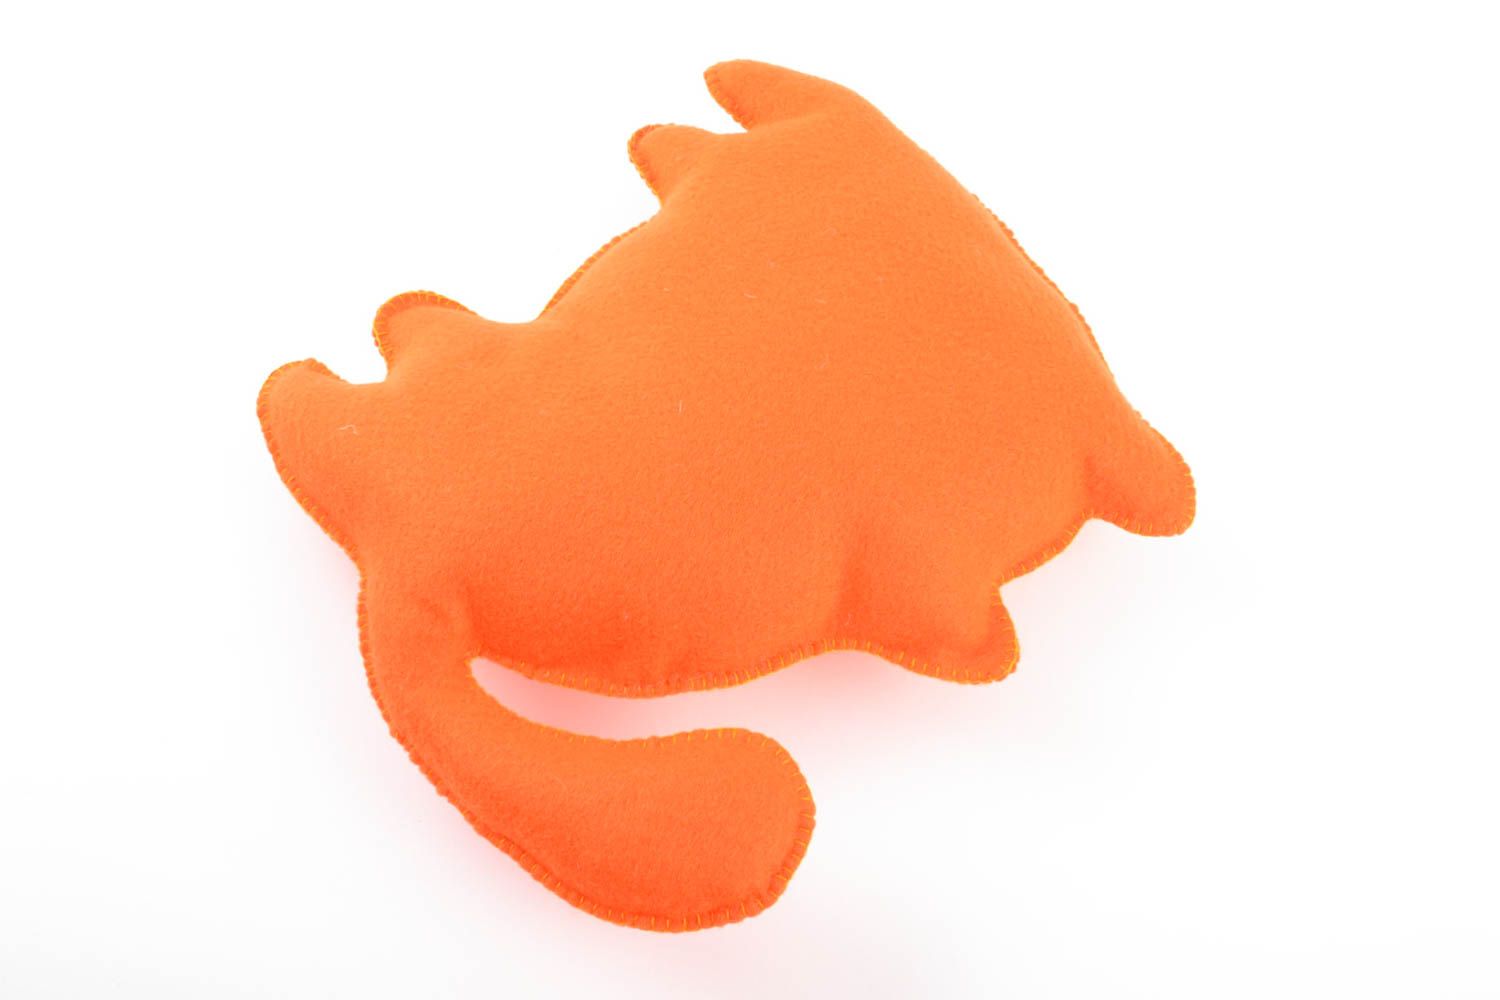 Оранжевая игрушка в виде кота ручной работы из фетра красивая оригинальная фото 3